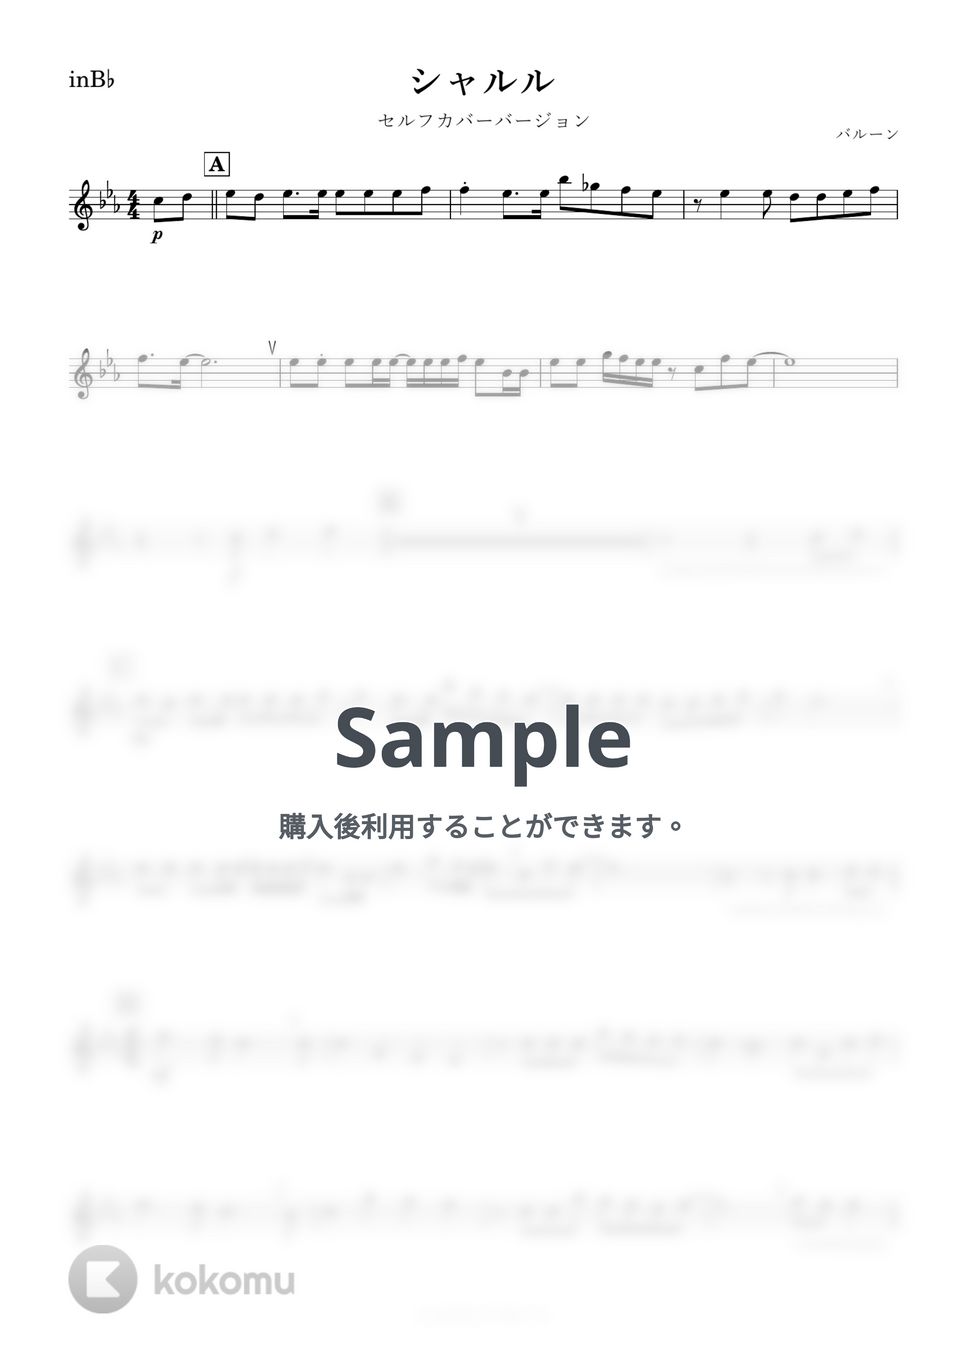 バルーン - シャルル (B♭) by kanamusic